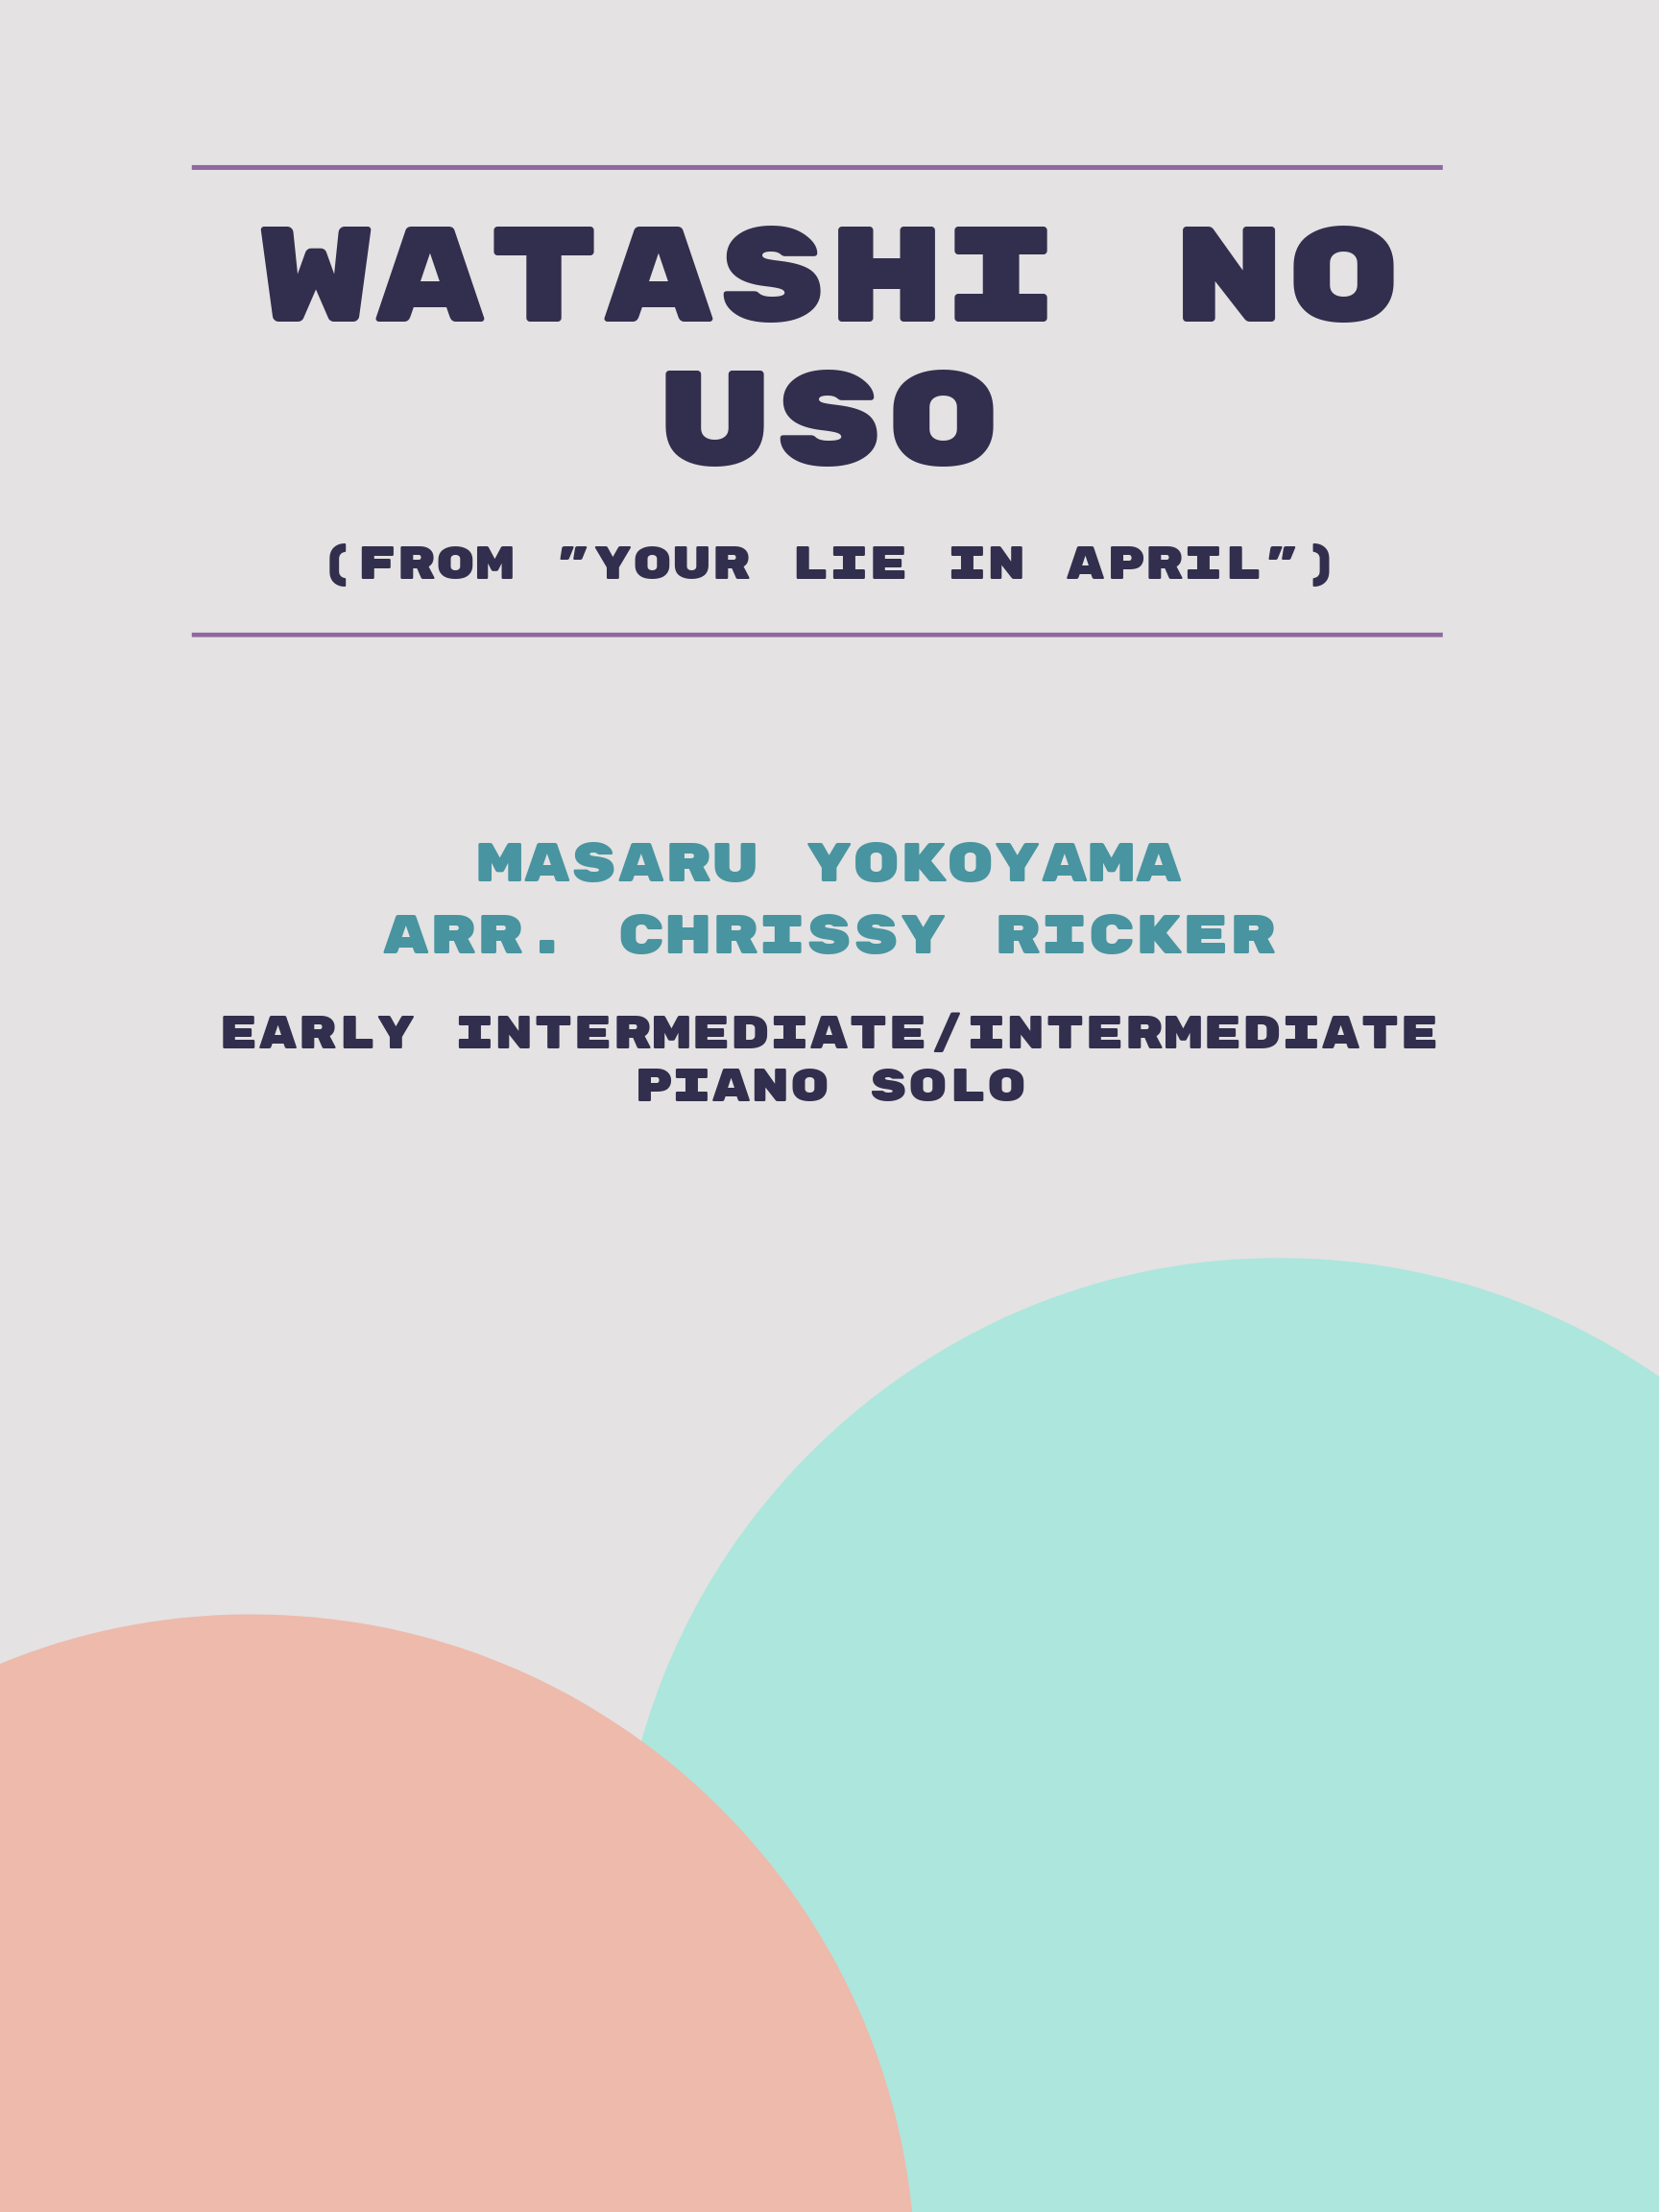 Watashi no Uso by Masaru Yokoyama